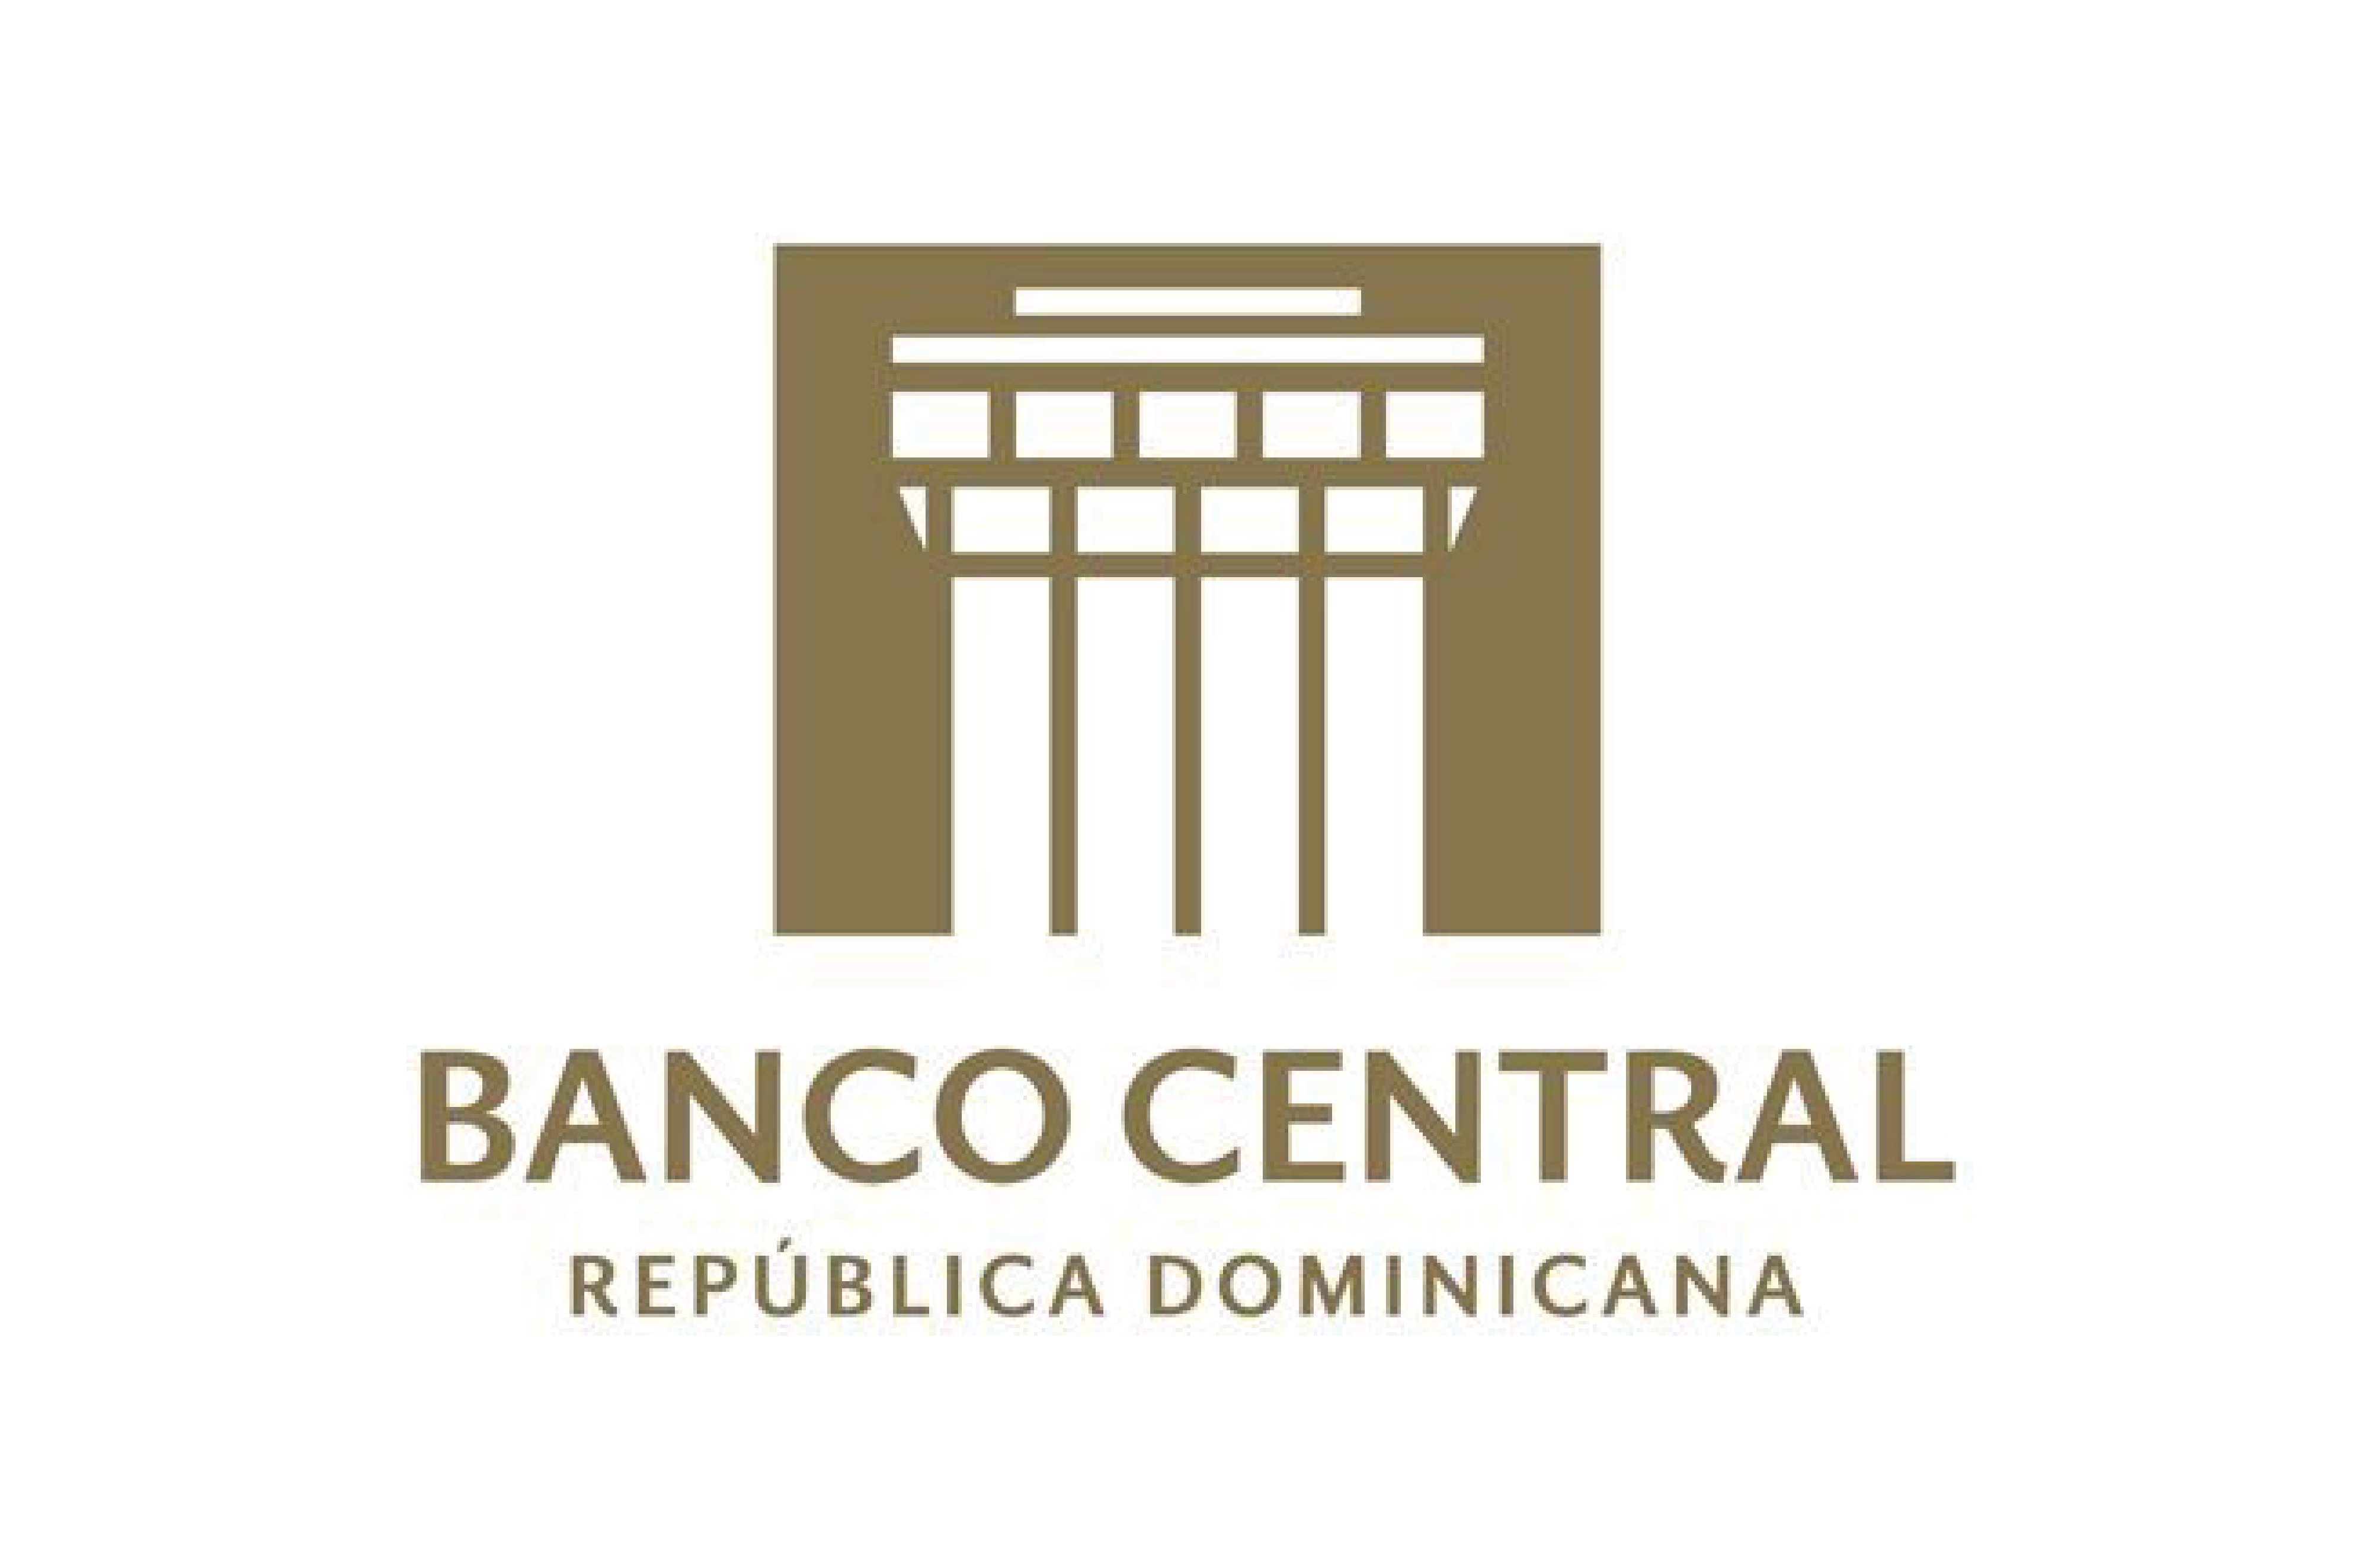 Logo Banco Central